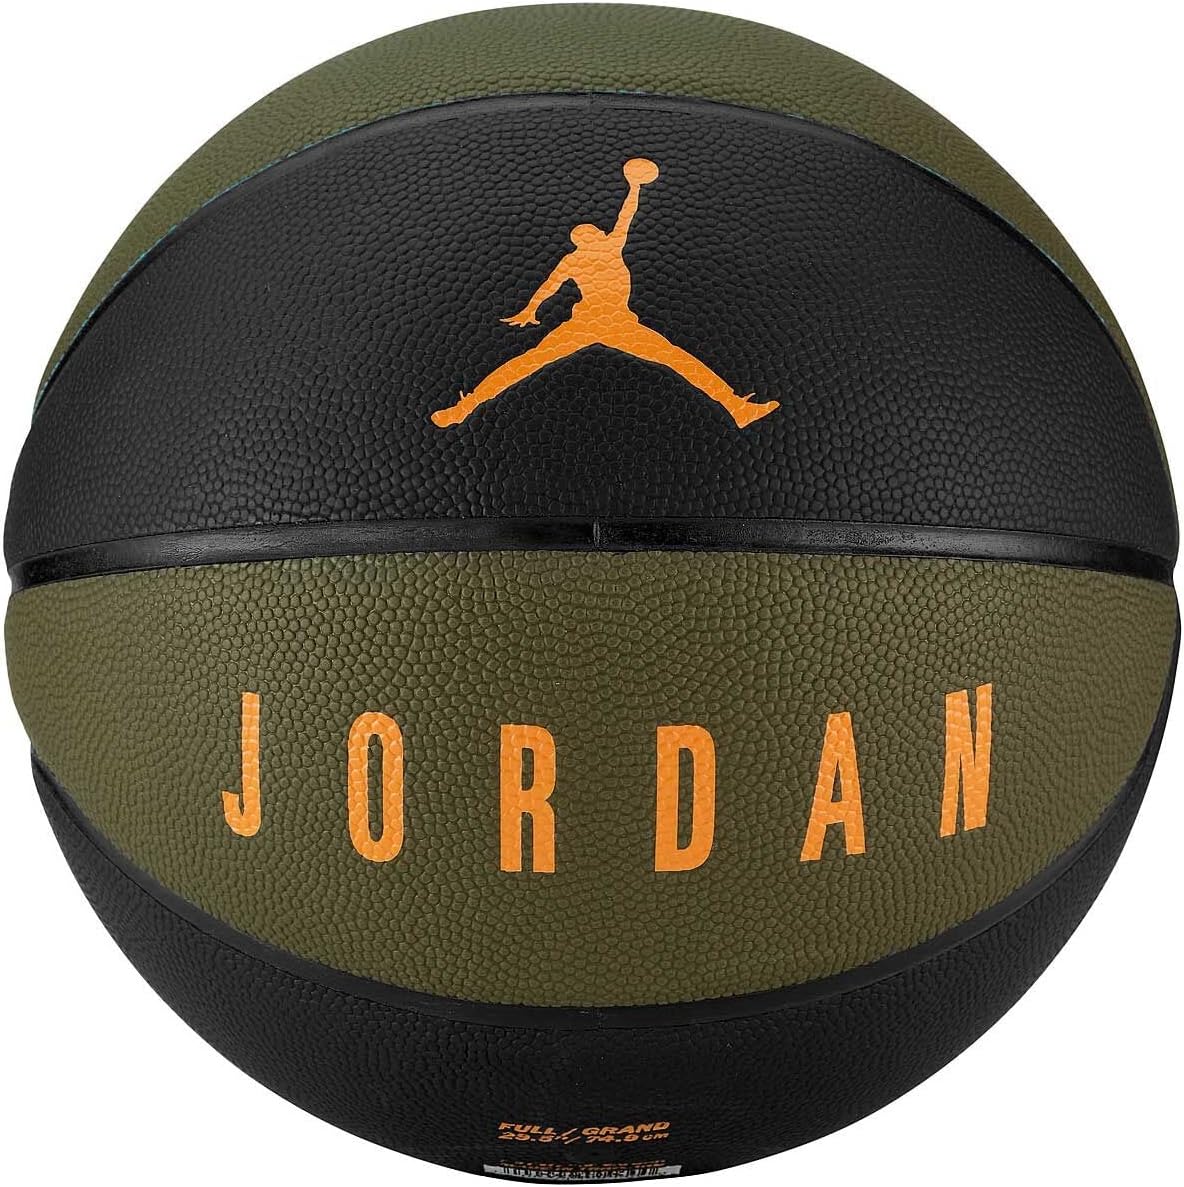 Jordan pallone da pallacanestro Ultimate verde-nero-arancio misura 7